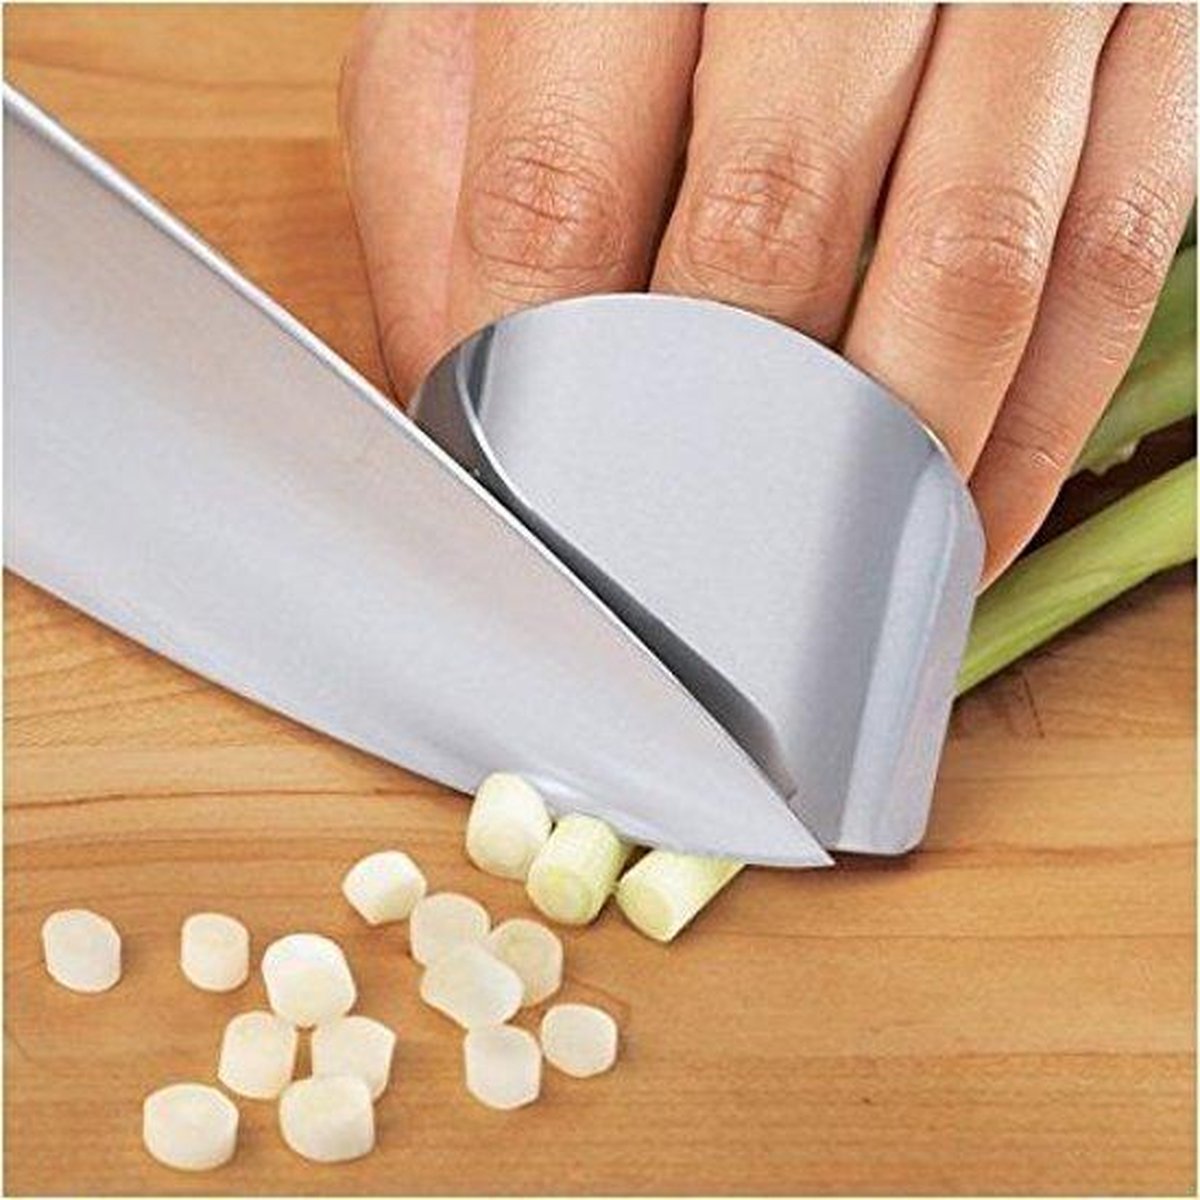 RVS Vinger Beschermer - Vinger Snij Bescherming - Vingerbeschermer tijdens het Snijden van Groente - Keuken Accessoire - Zilver - Merkloos